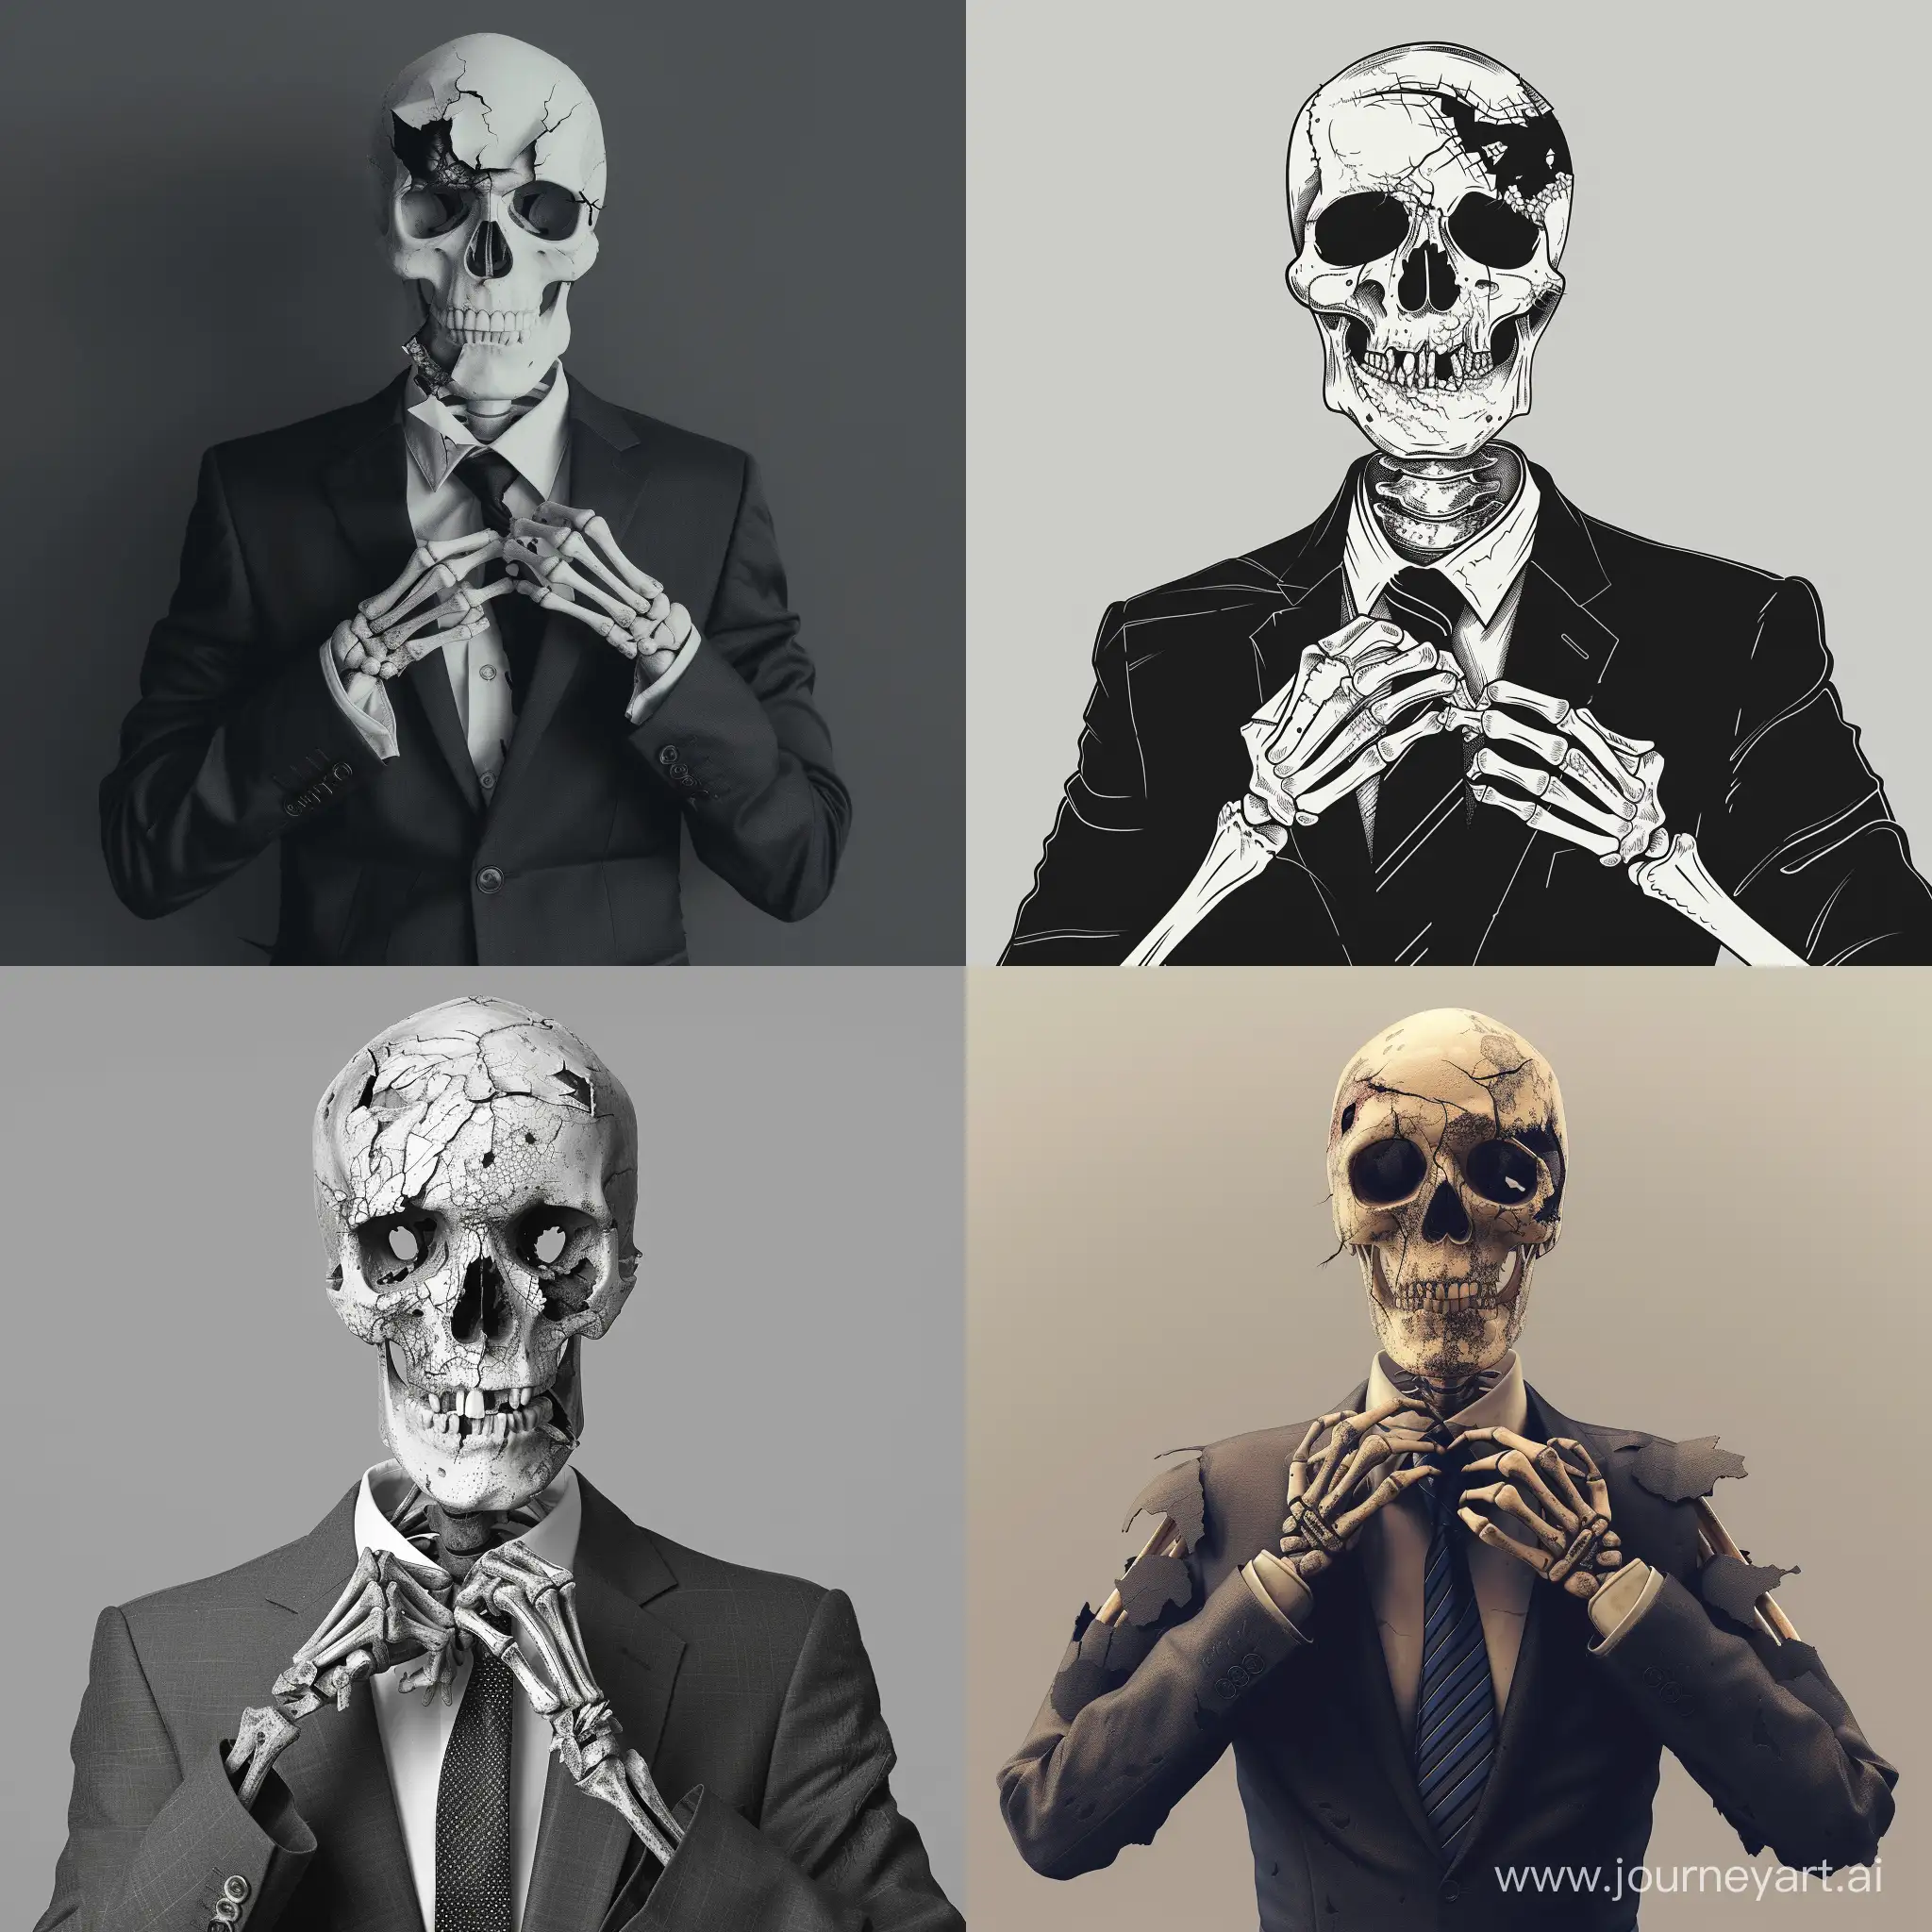 Скелет с ободранной кожей, в деловом костюме поправляет свой галстук, стильное изображение